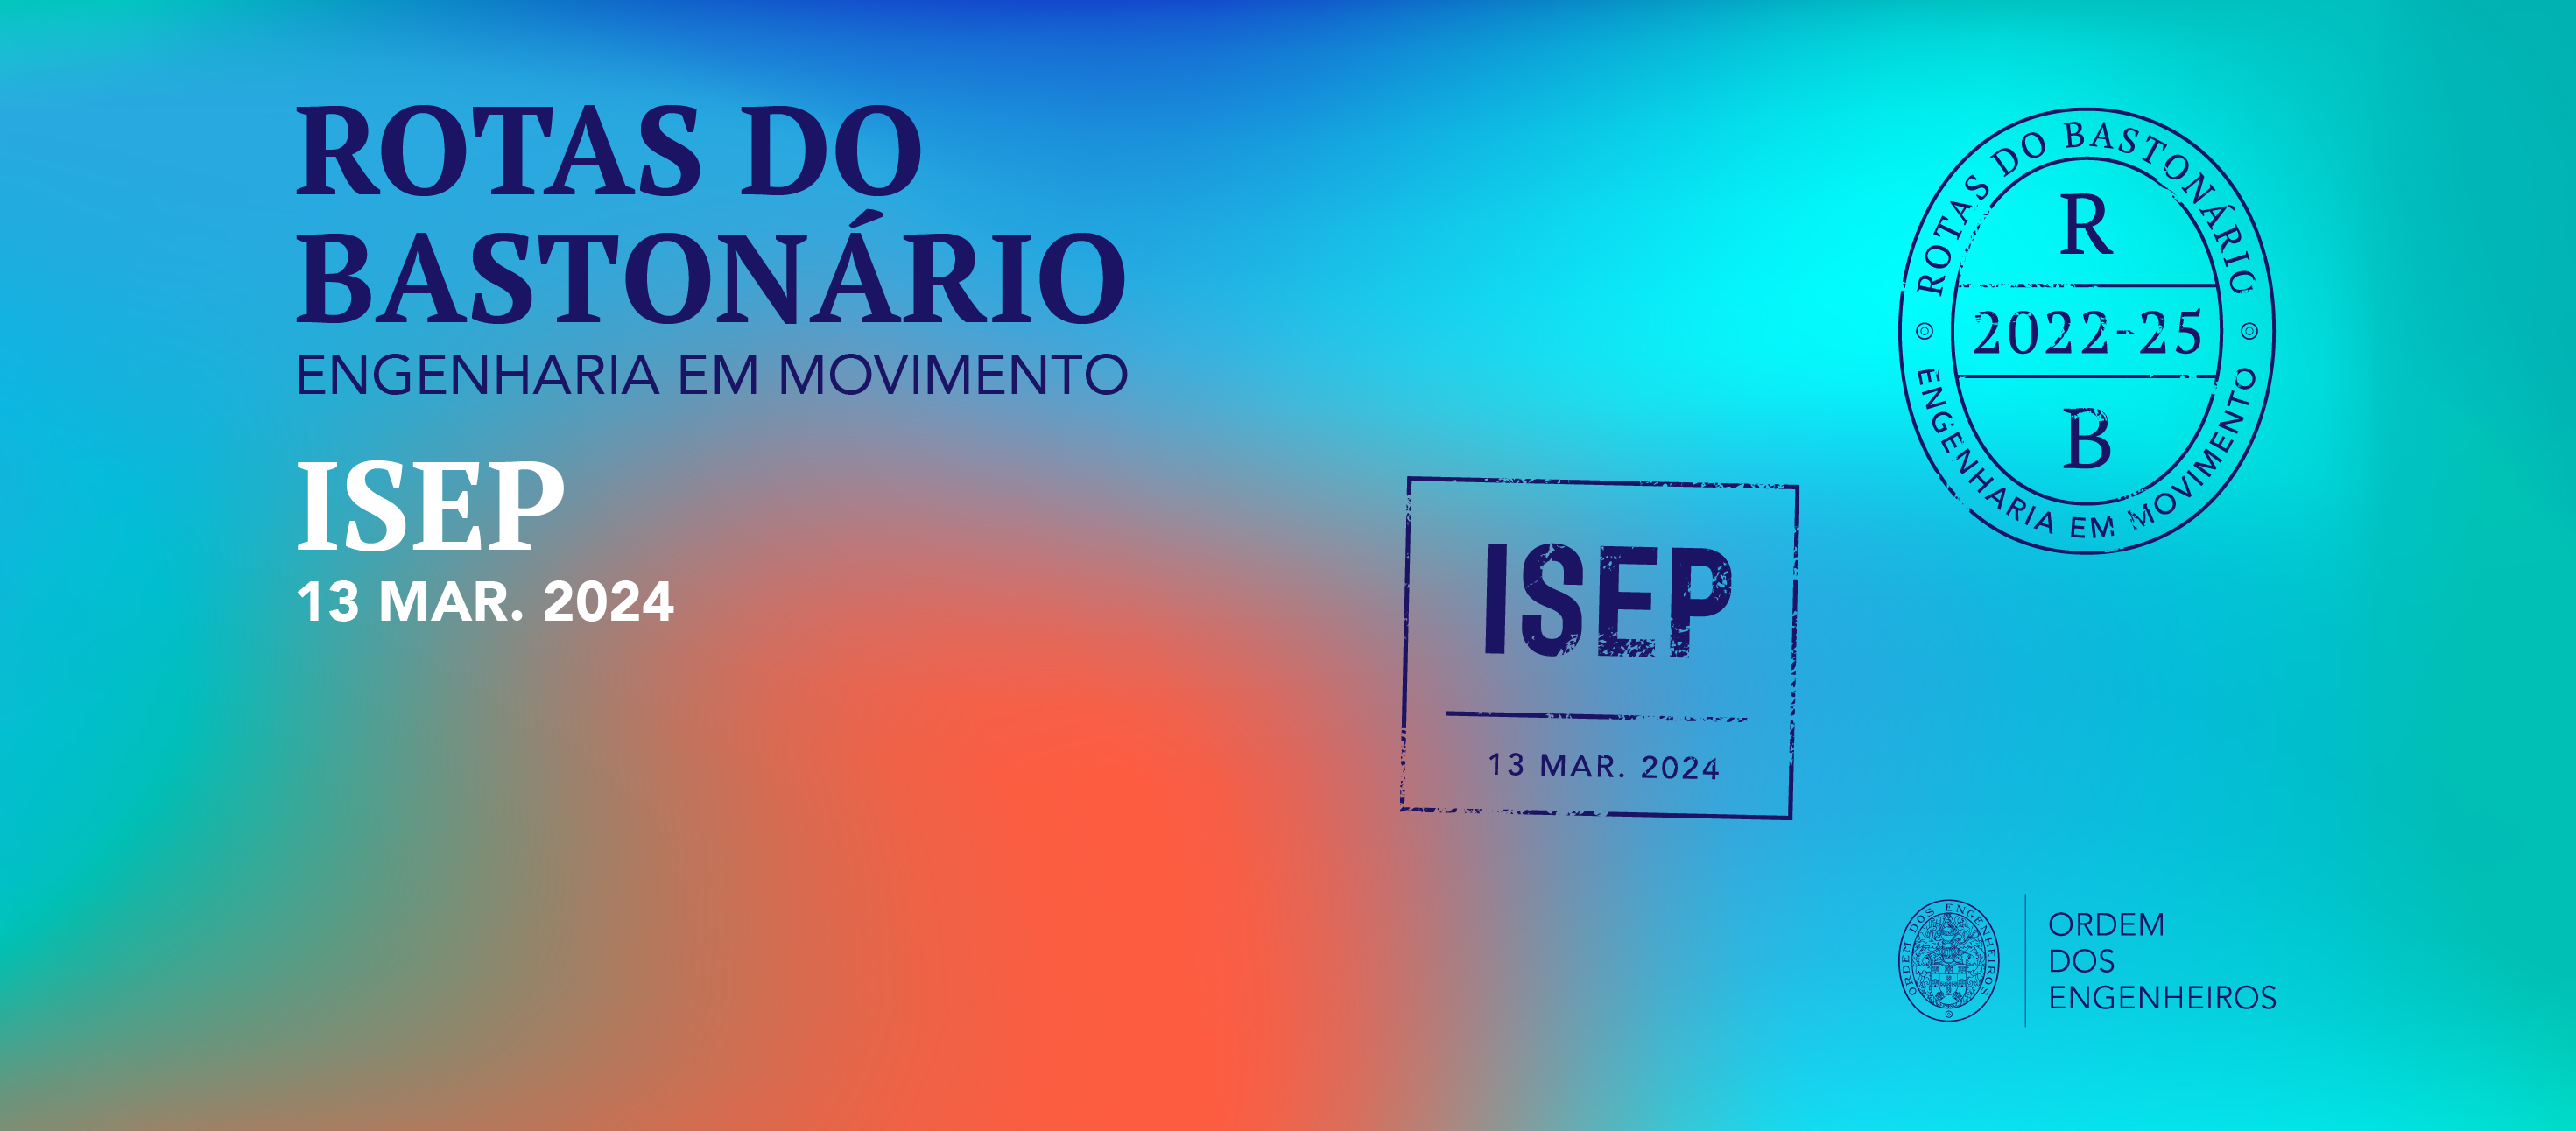 ISEP recebe evento "Rotas do Bastonário - Engenharia em Movimento"